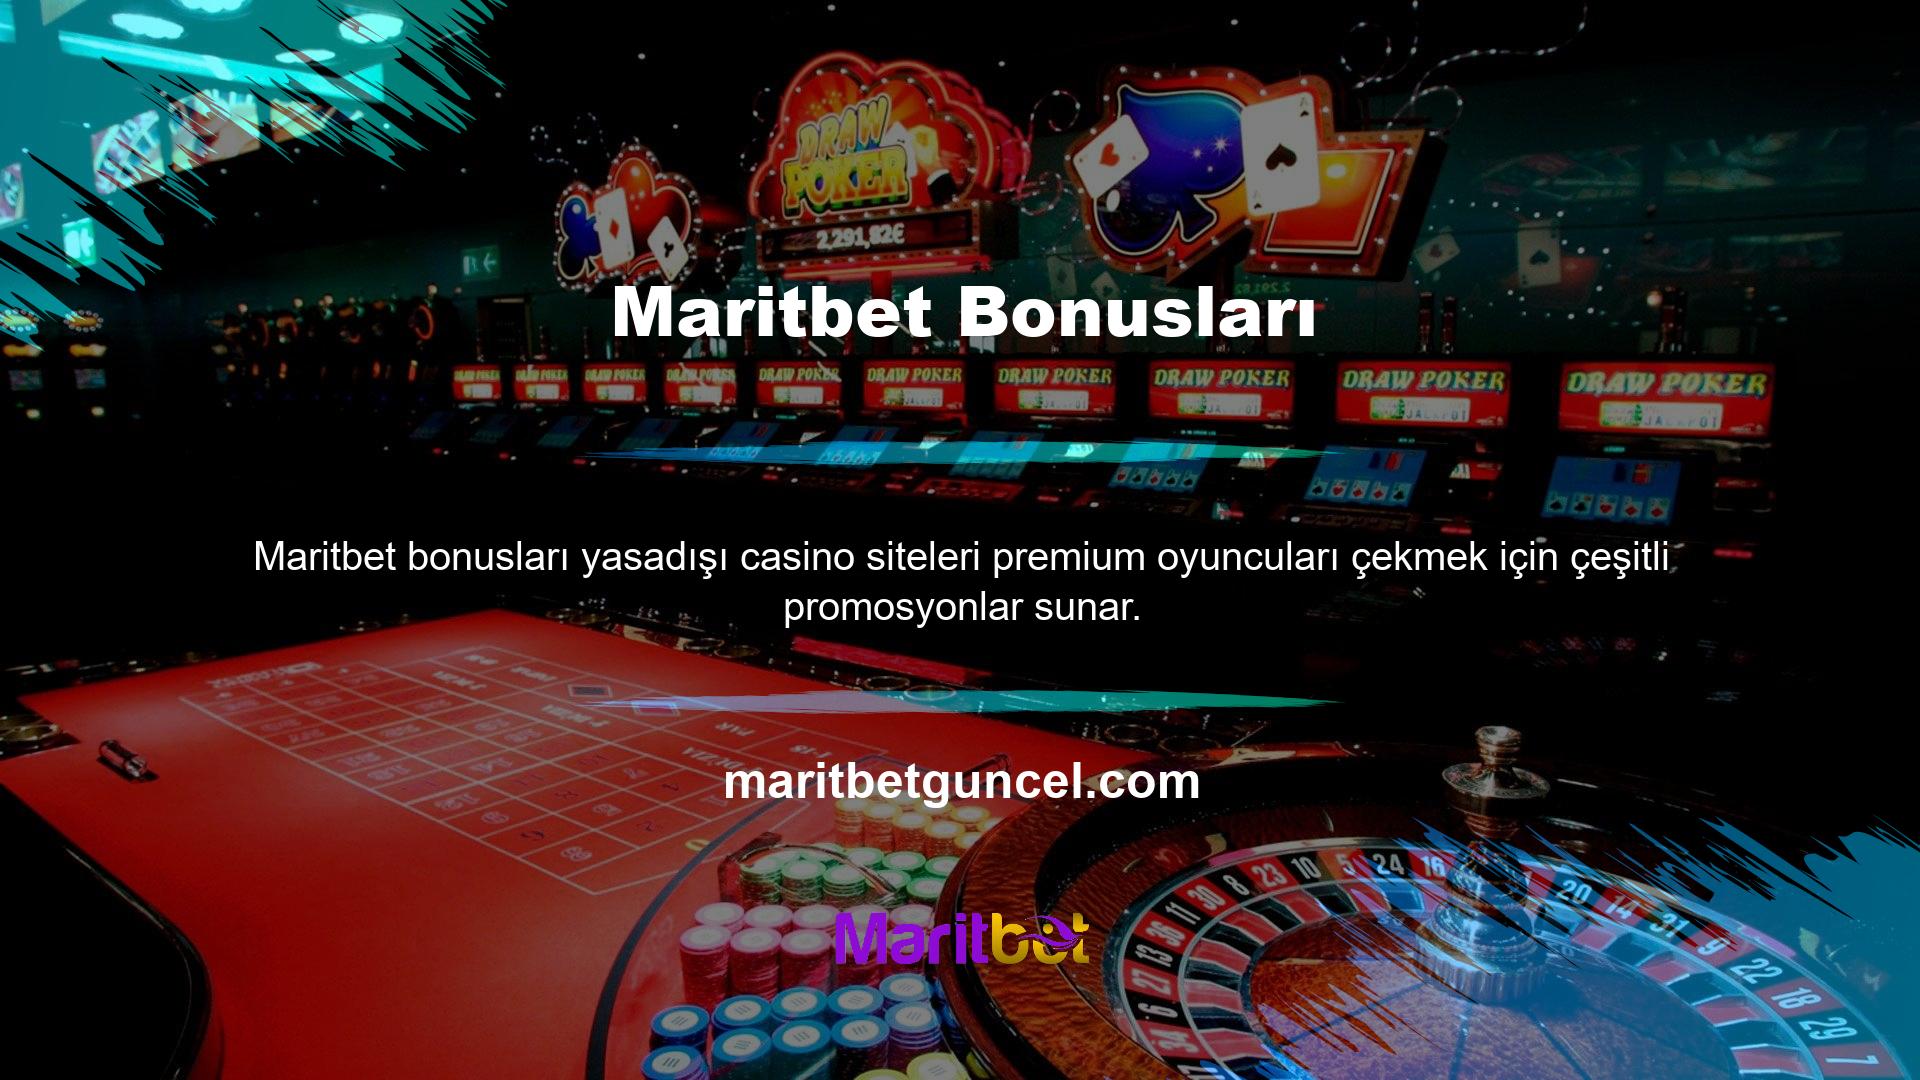 Türk yasa dışı casino siteleri arasında Maritbet, en iyi bonusları sunanlar en popüler olanlardır